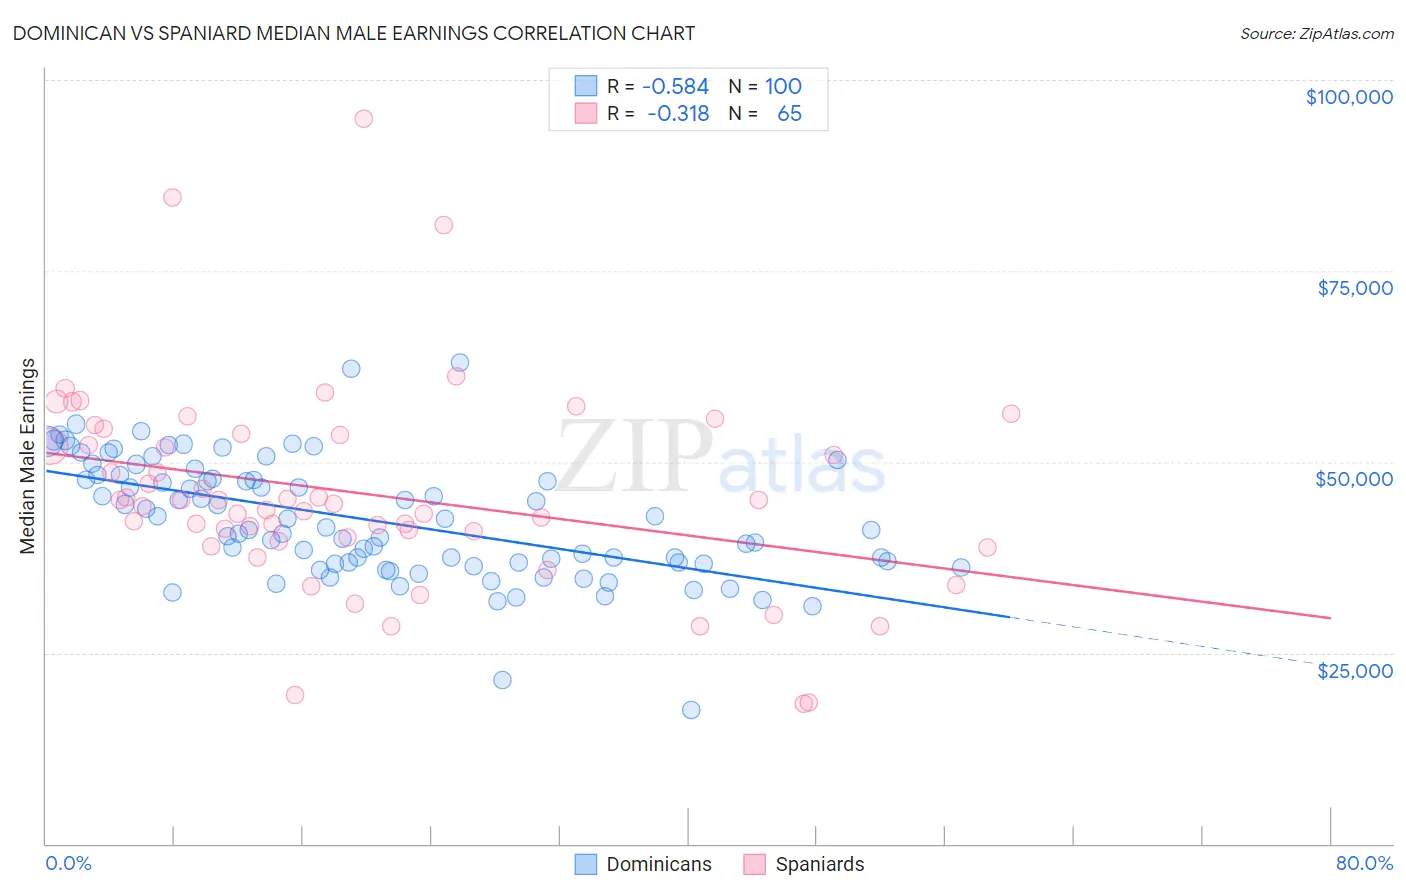 Dominican vs Spaniard Median Male Earnings